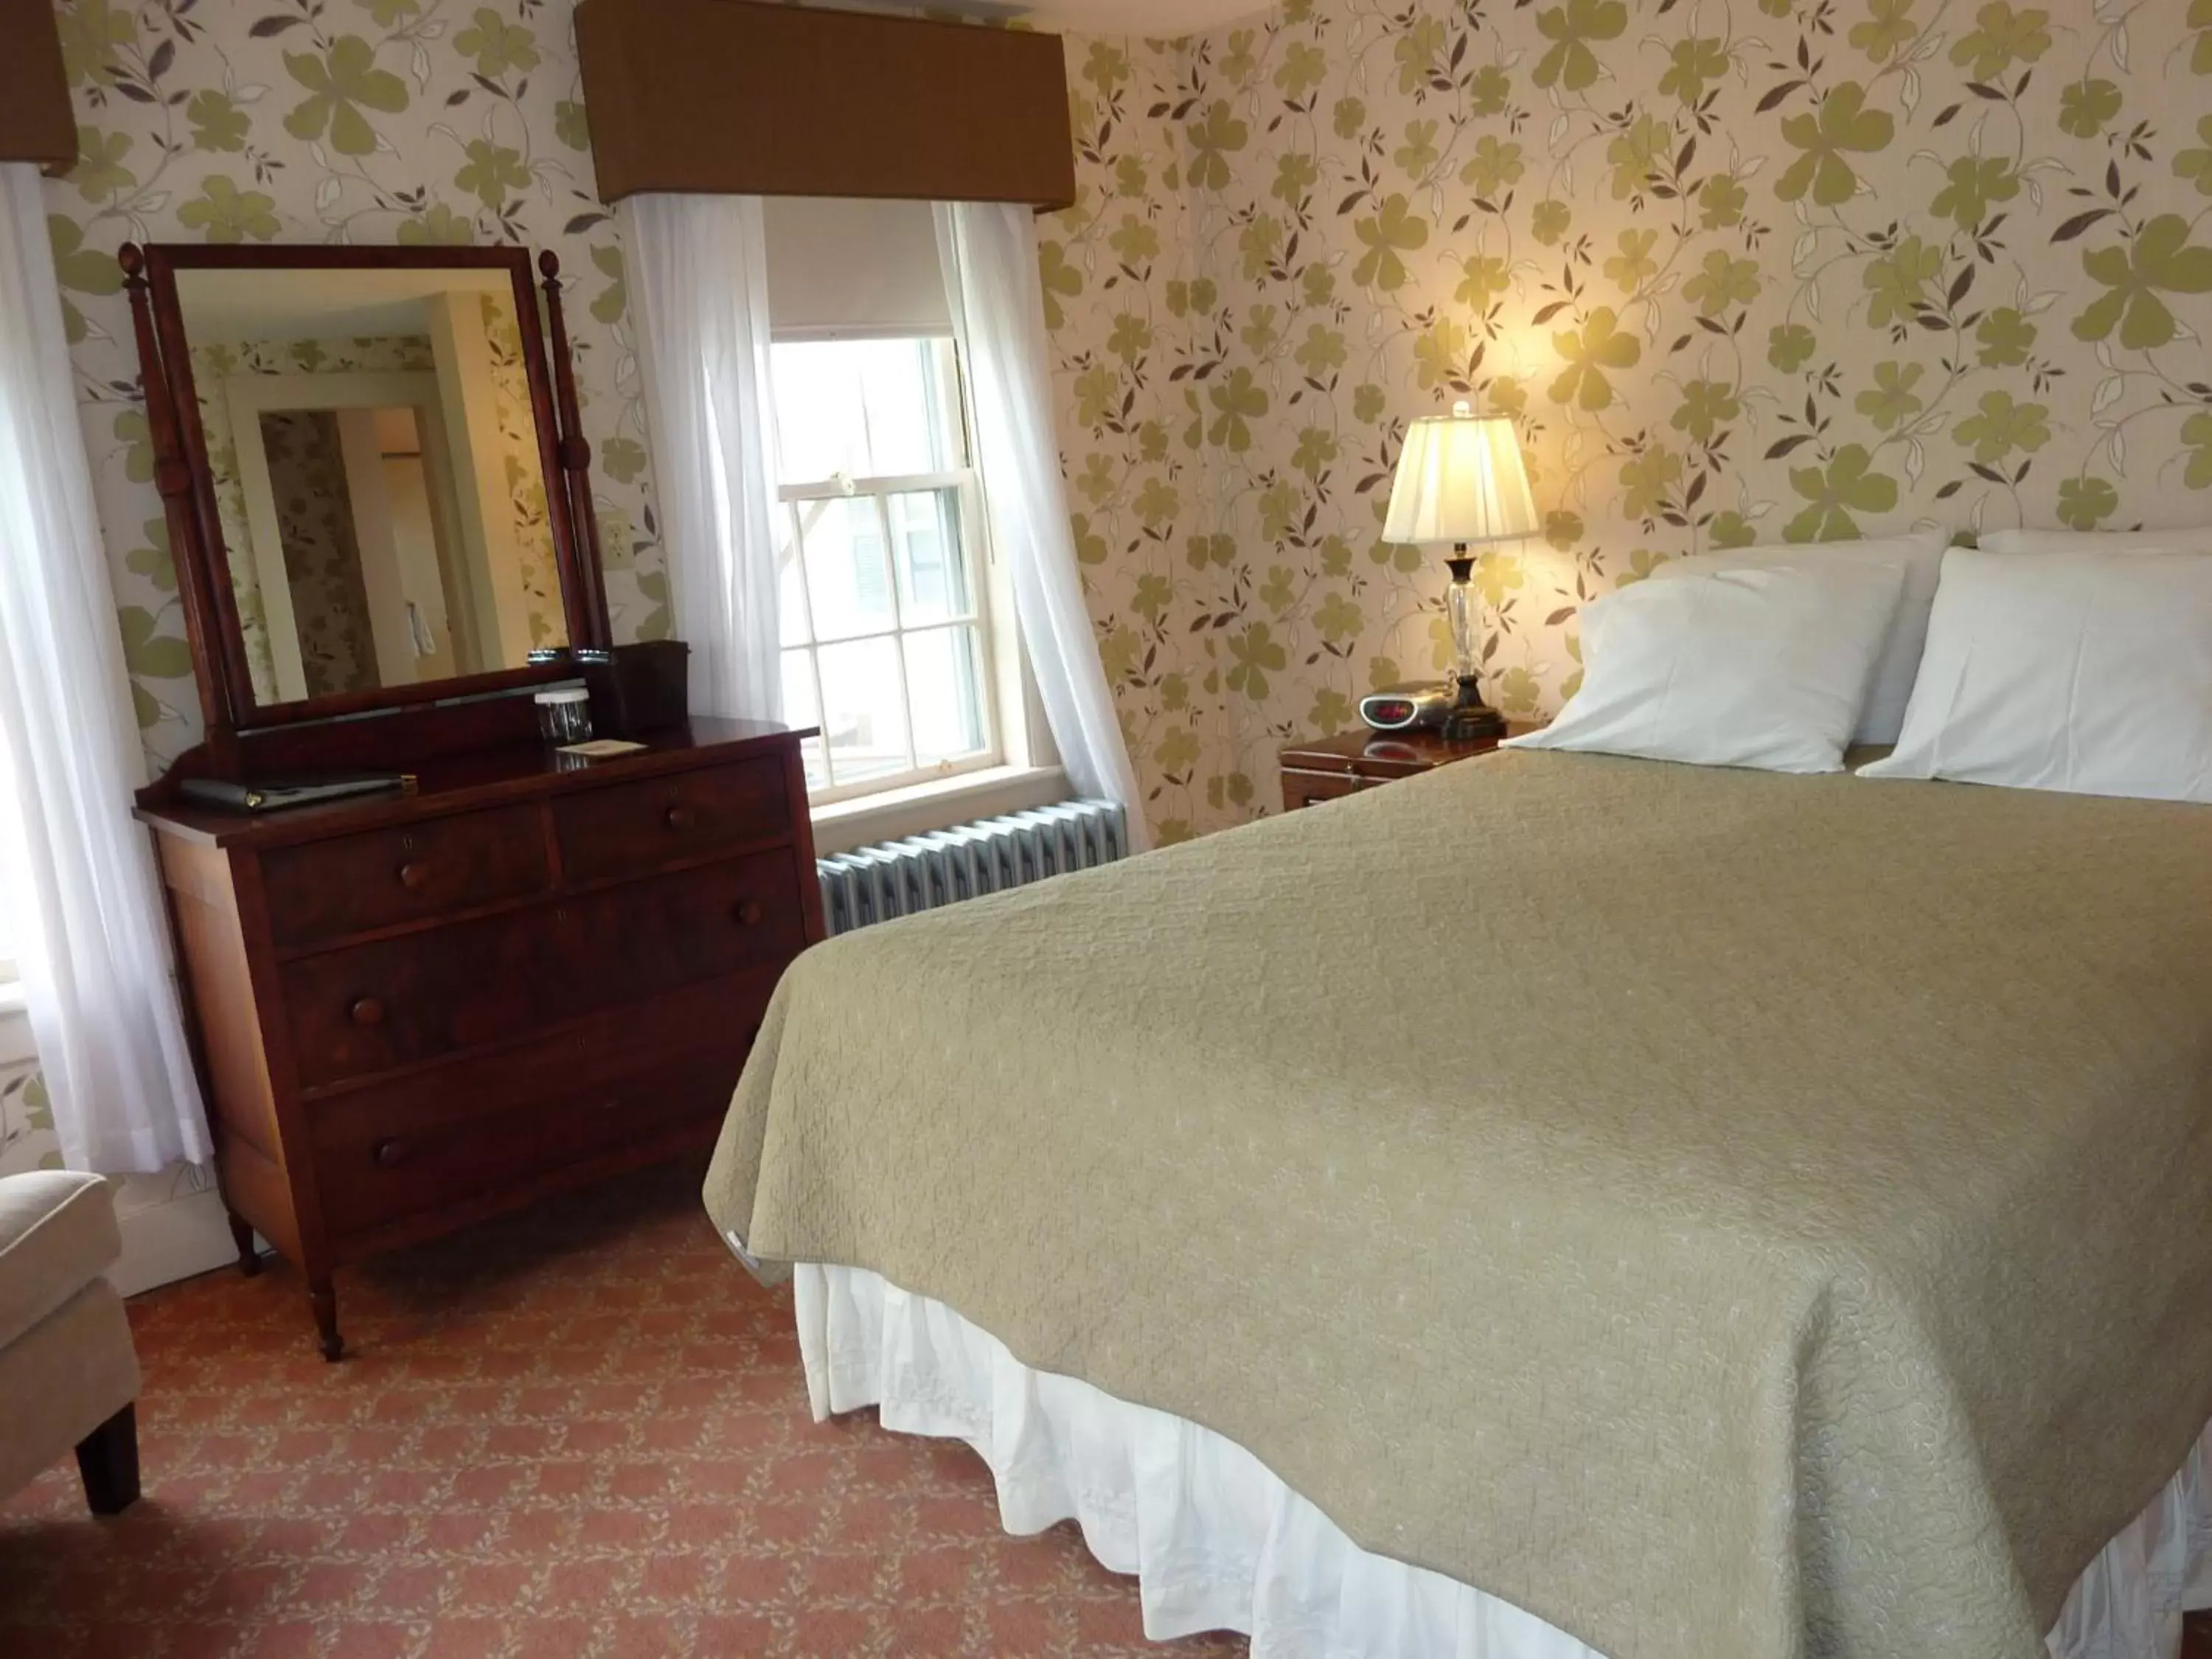 Bedroom, Room Photo in Franconia Inn